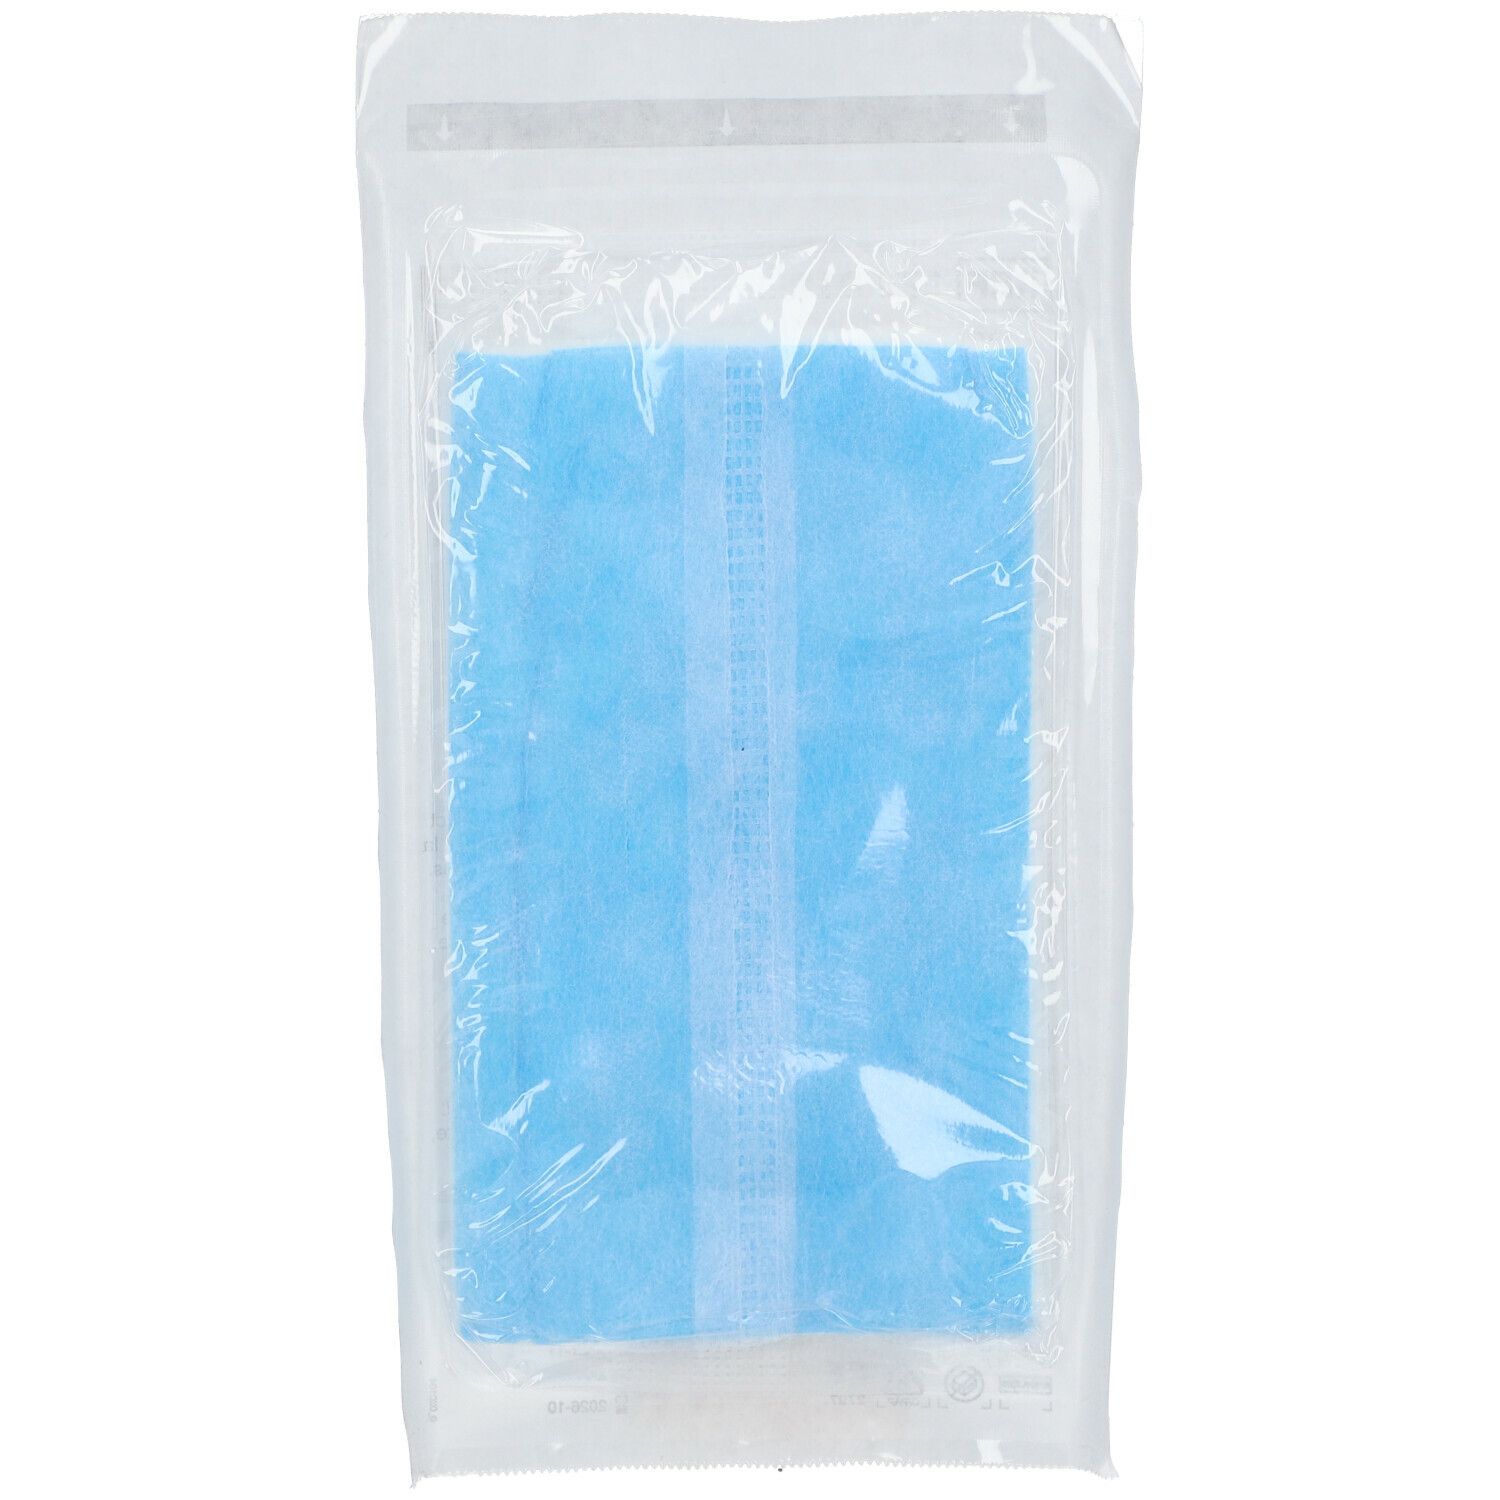 Klinion® Bandage Compressif Absorbant 10 x 20 cm